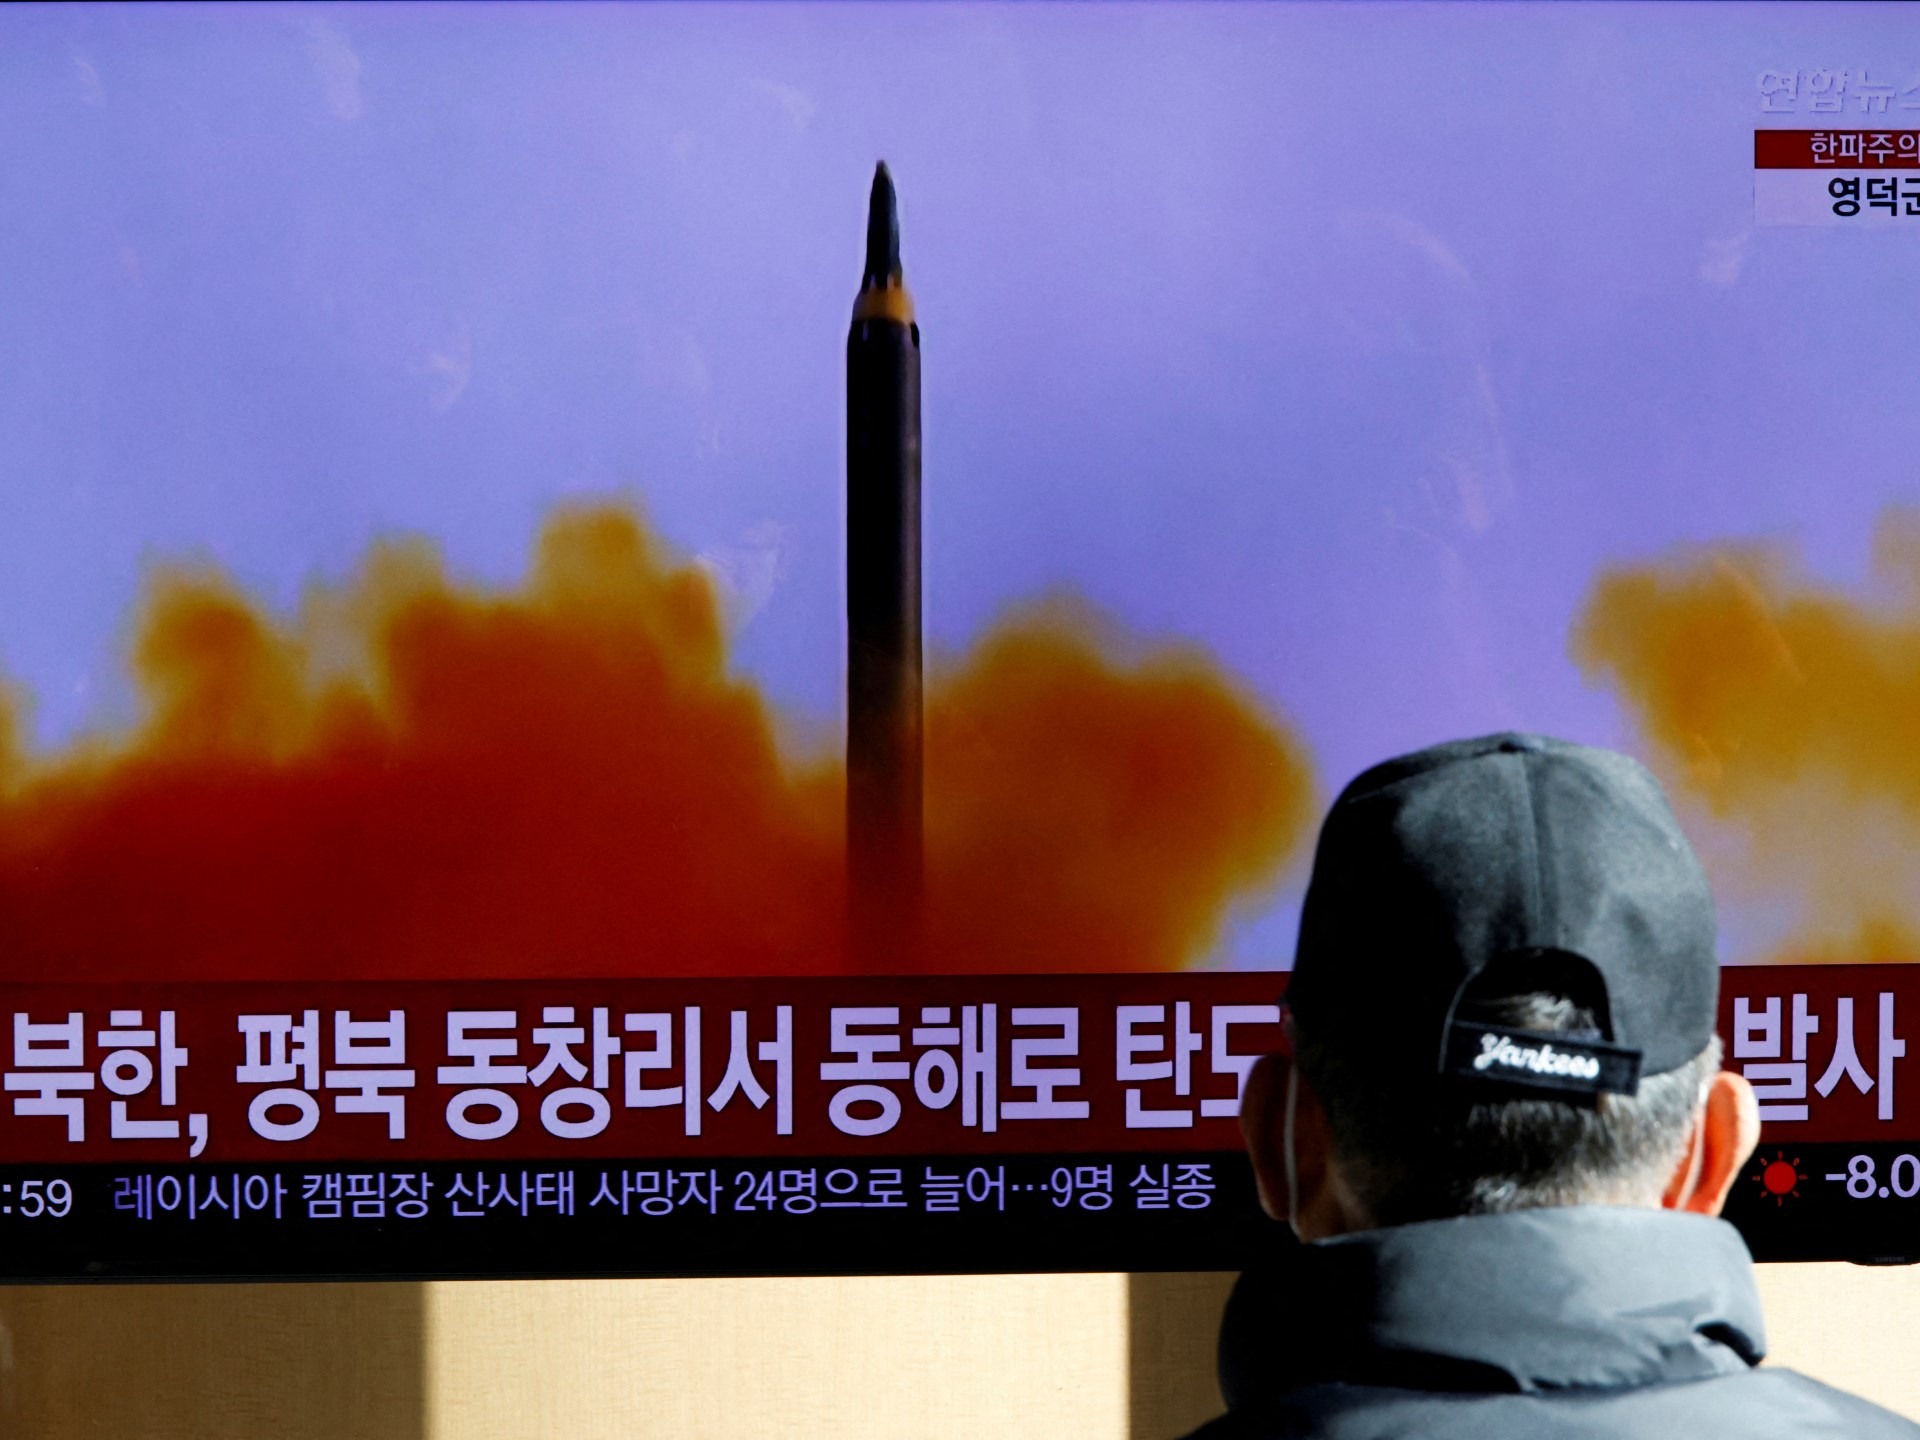 بعدما ختمت عام 2022 بـ3 صواريخ.. كوريا الشمالية تستقبل عام 2023 بإطلاق صاروخ باليستي